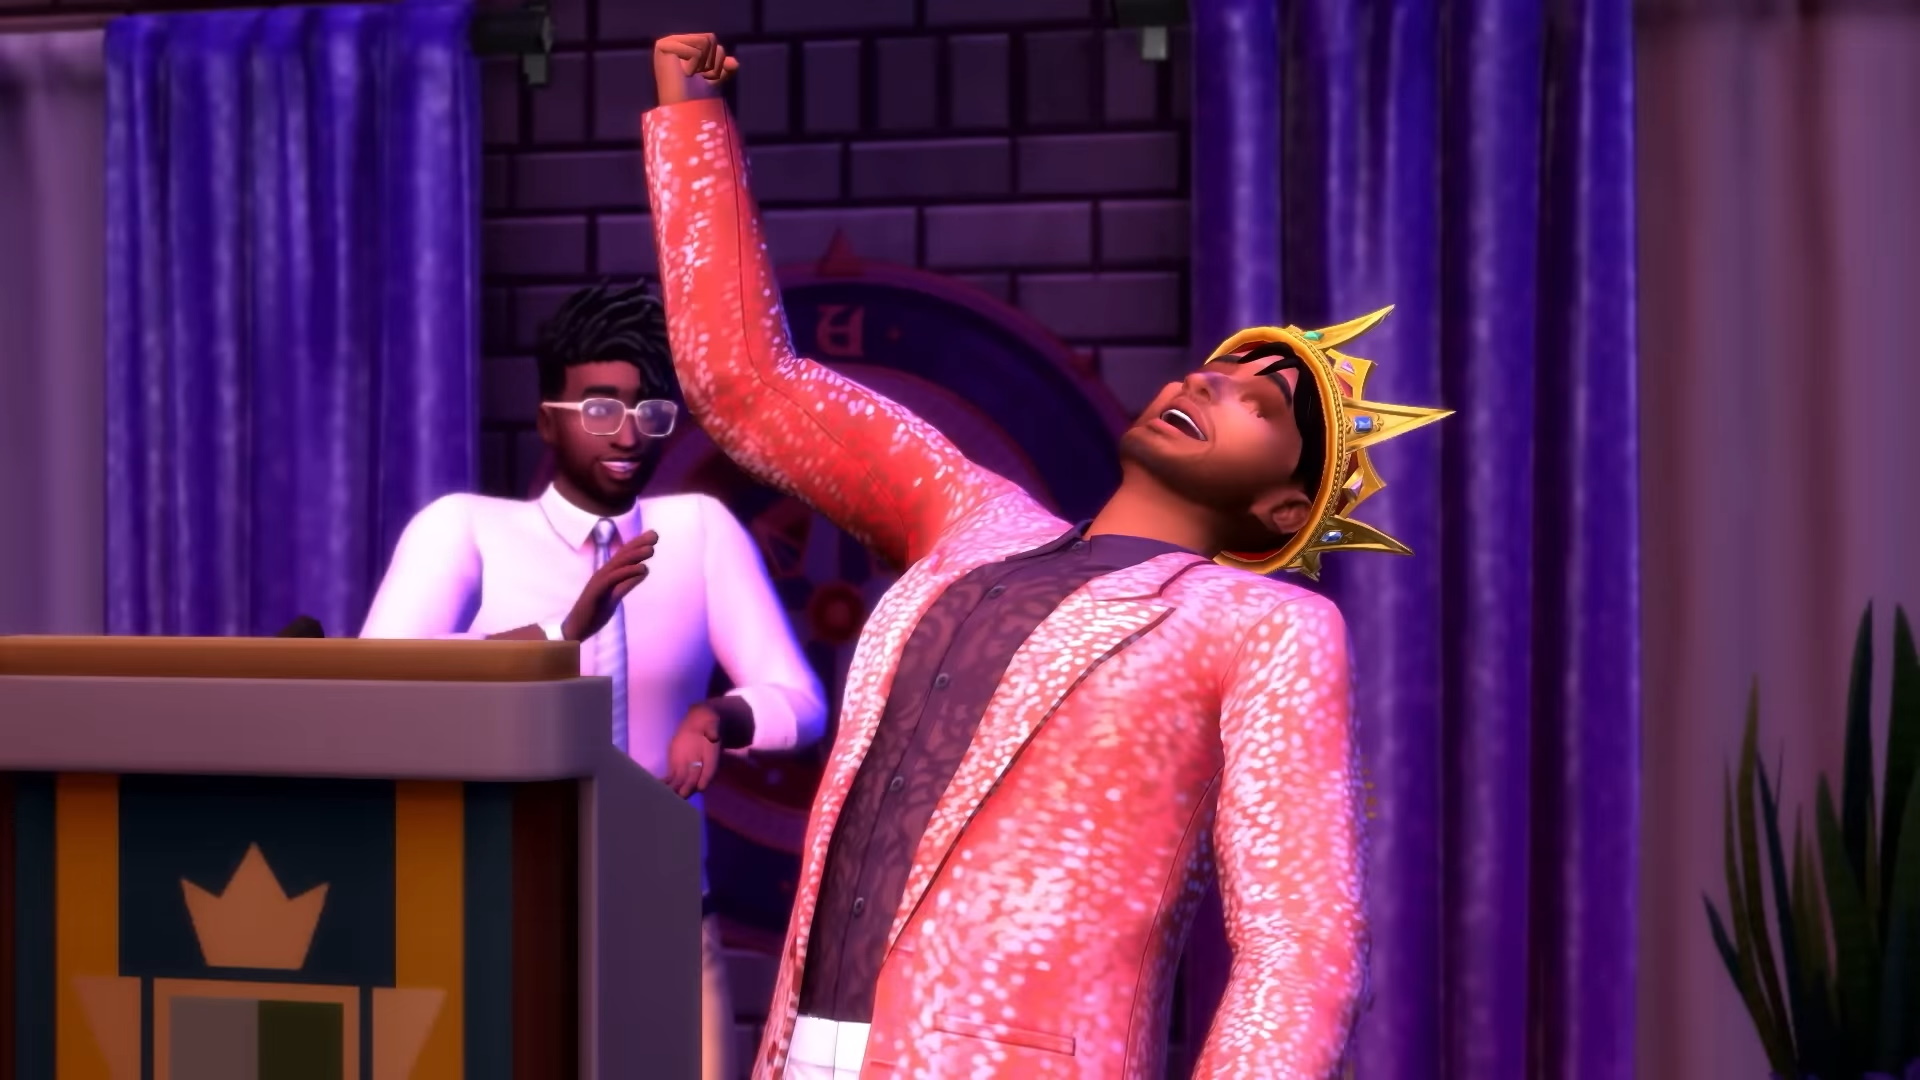 La nueva expansión Sims 4 ofrece más opciones de personalización que nunca